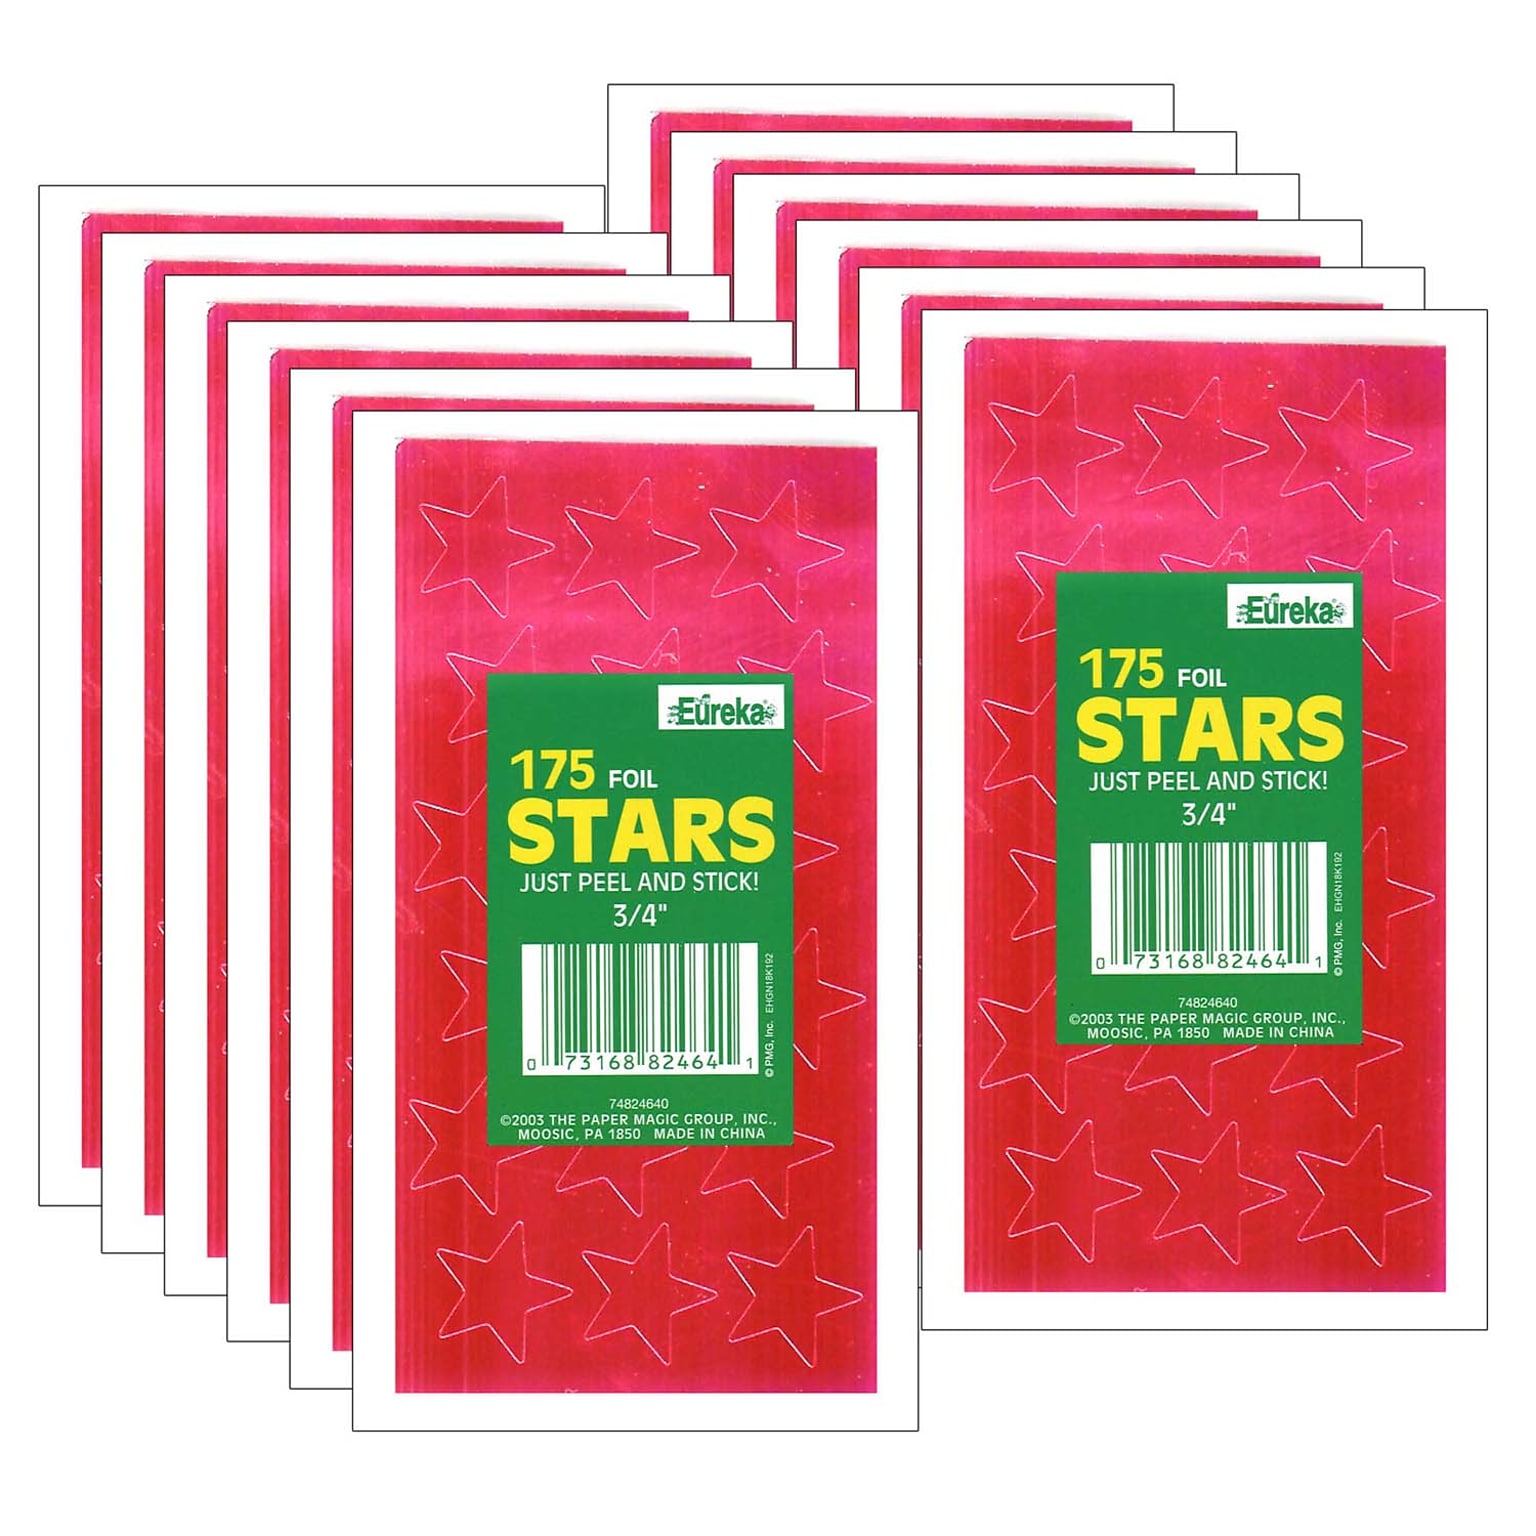 Eureka Presto-Stick Foil Star Stickers, 3/4, Red, 175 Per Pack, 12 Packs (EU-82464-12)